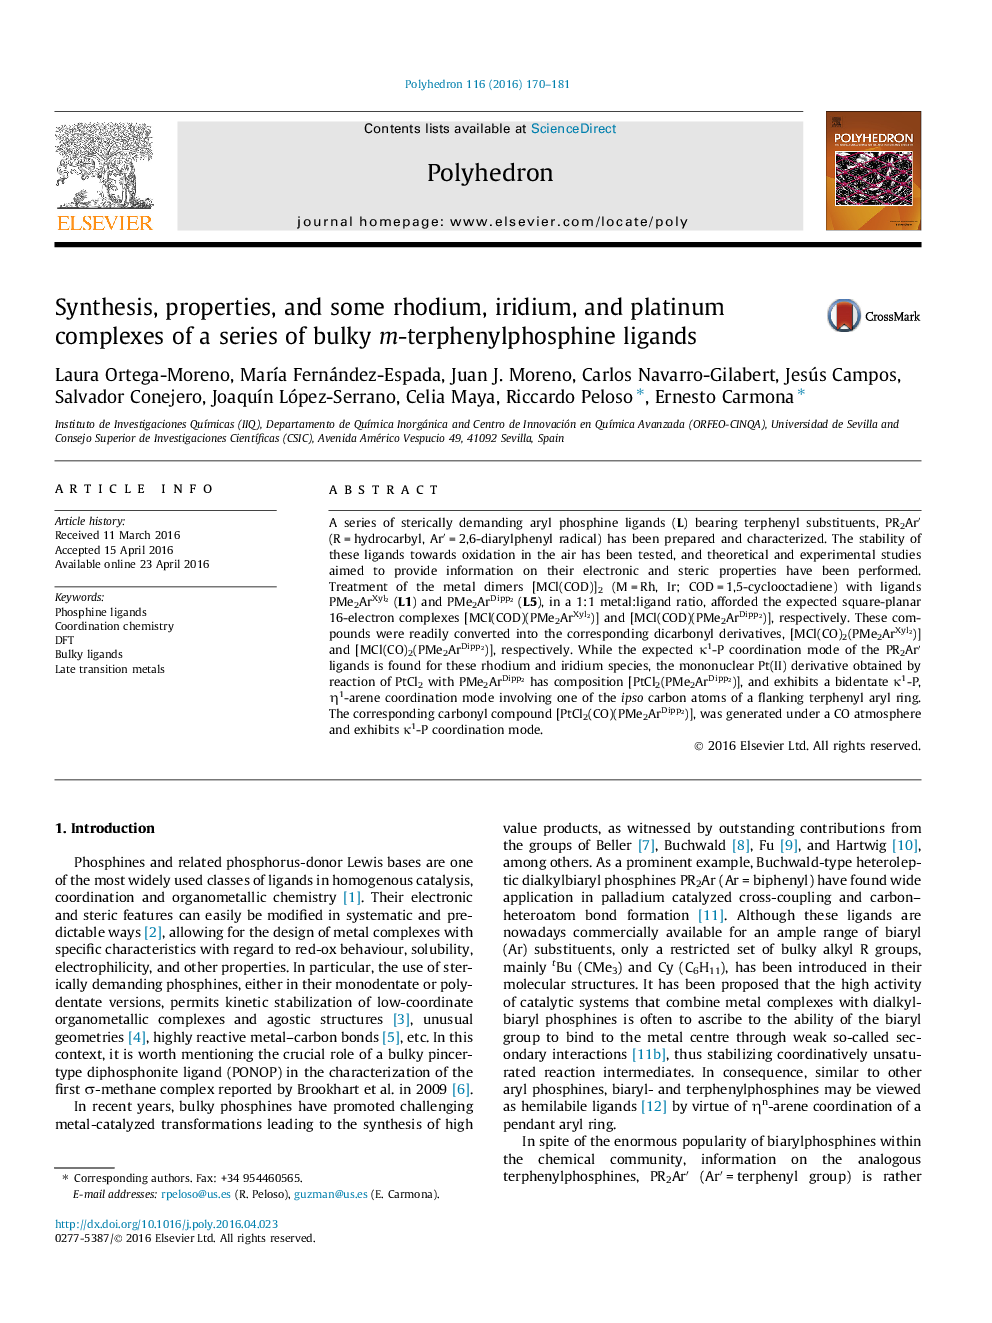 سنتز، خواص و برخی از ردیوم، ایریدیم و پلاتین از مجموعه ای از لیگاندهای متراکم ترپنیل فسفین 